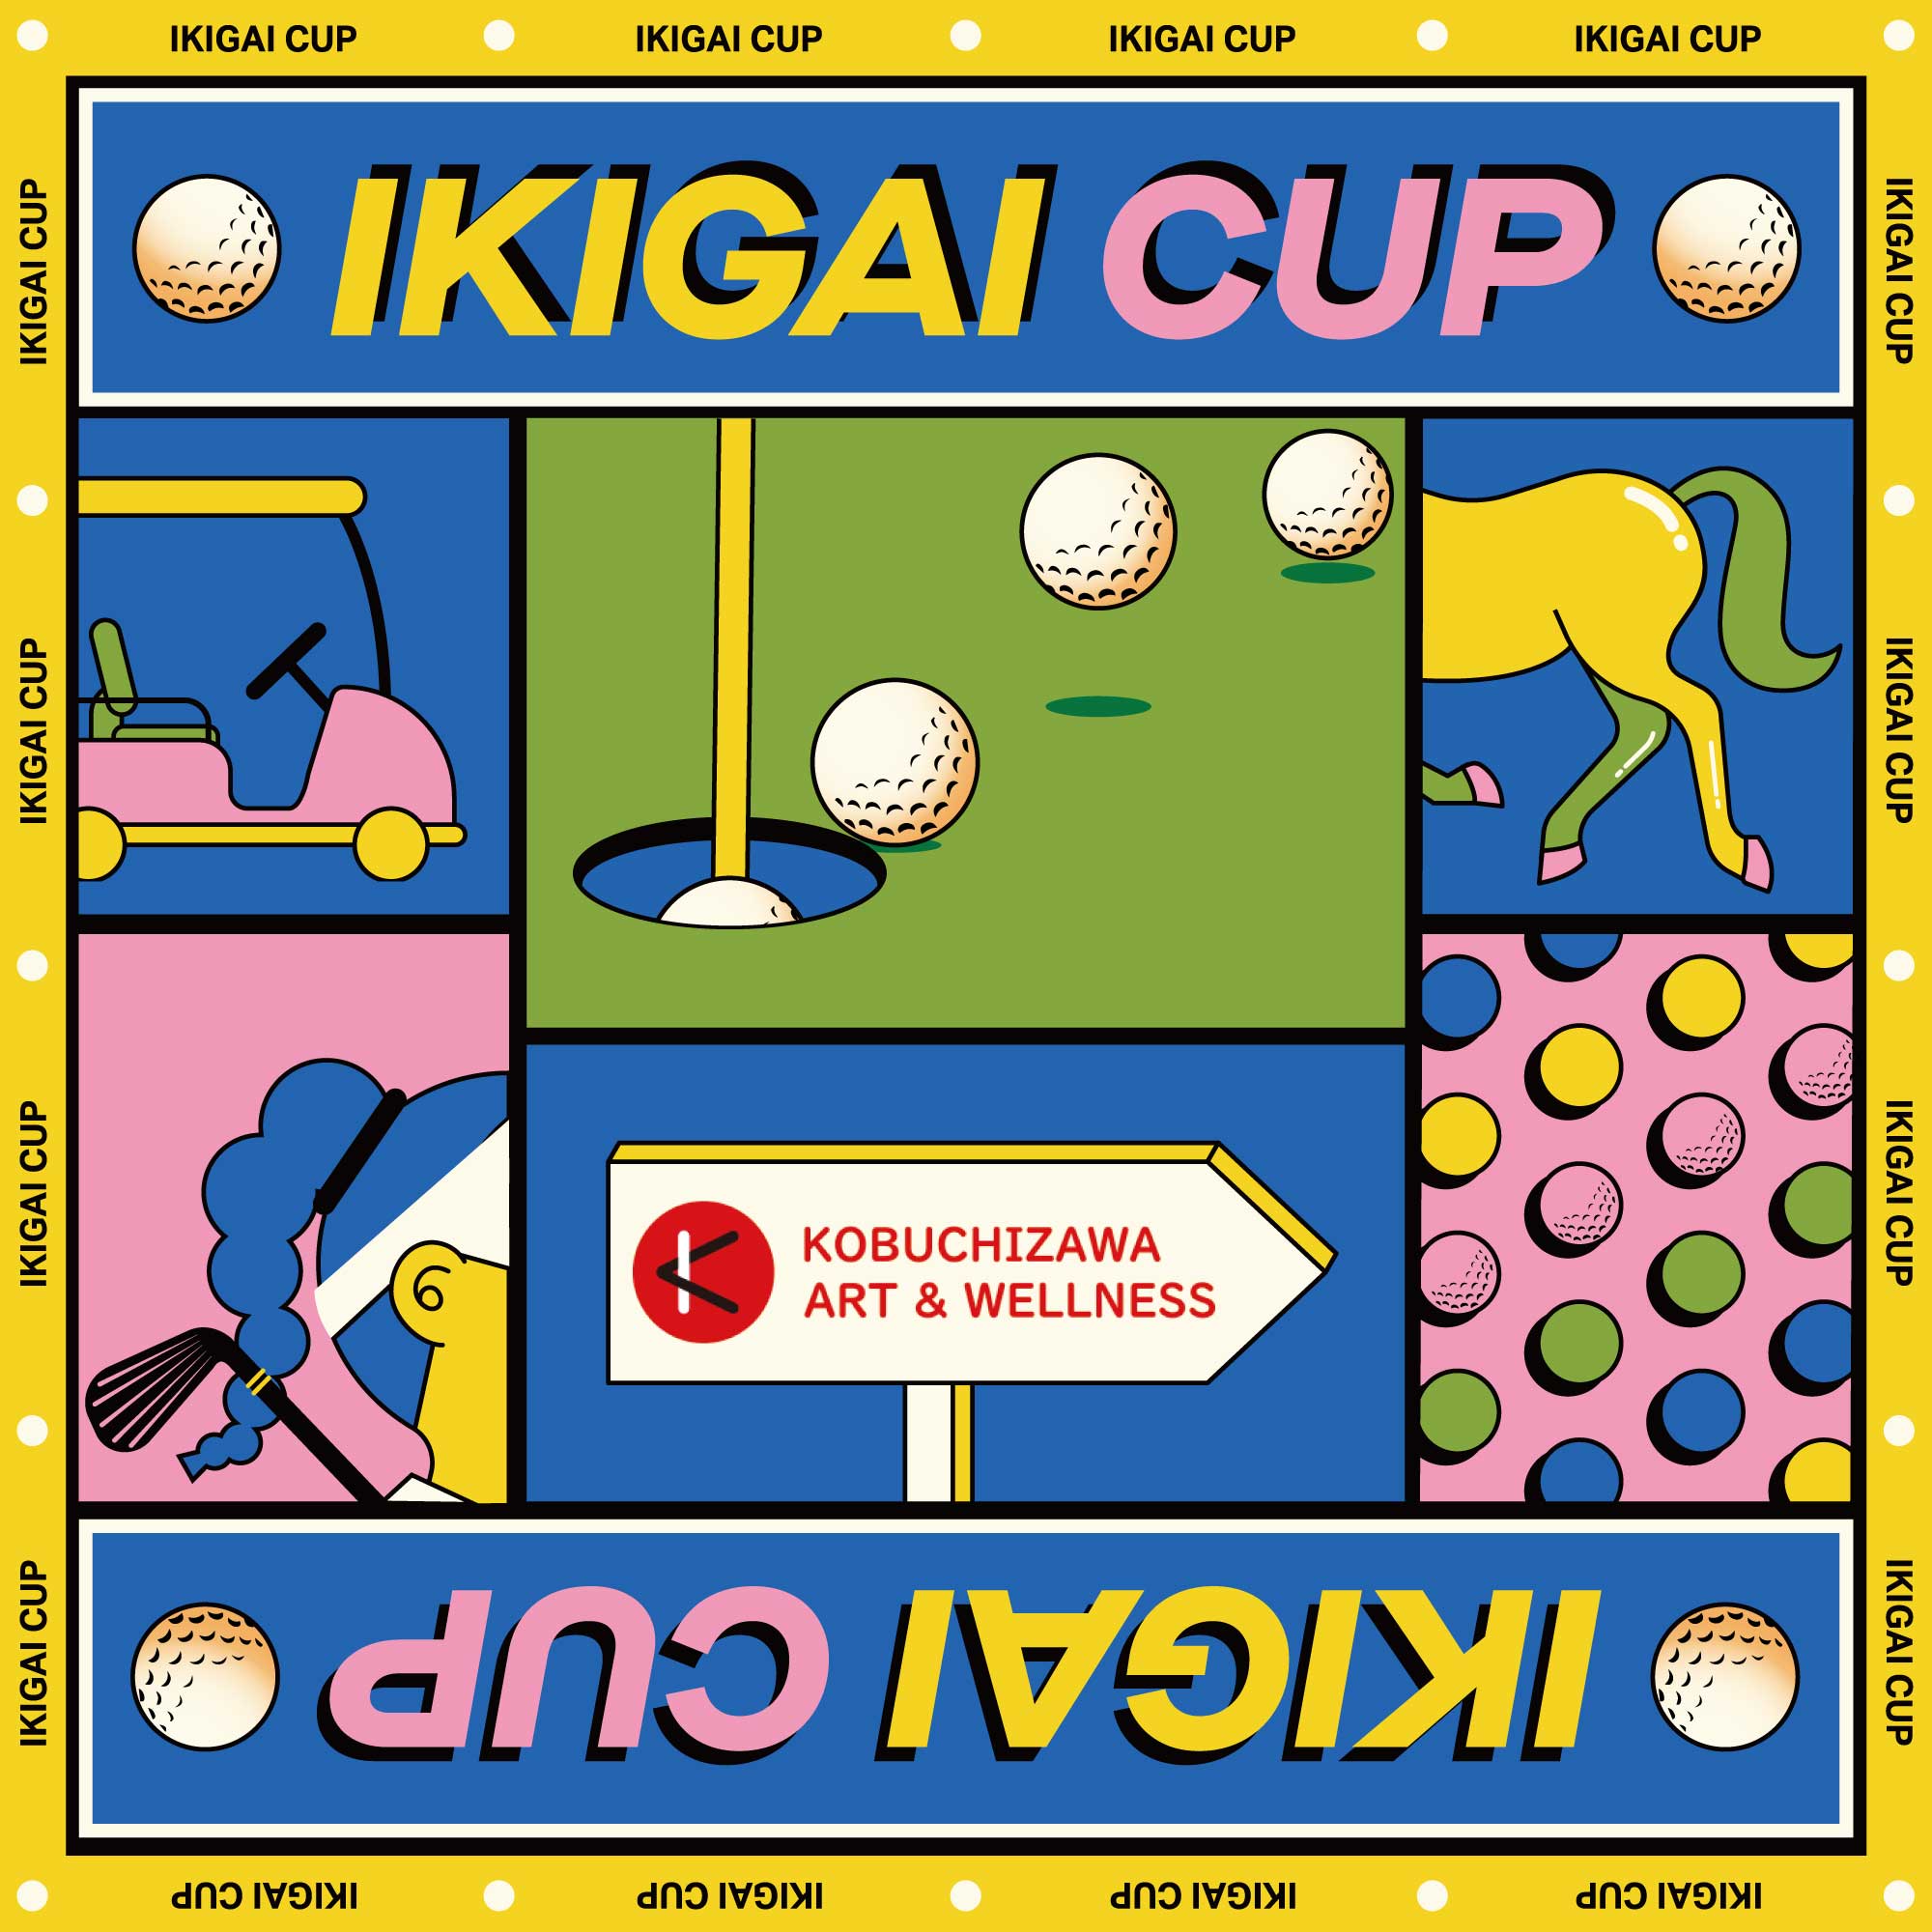 第2回IKIGAI CUP 結果発表